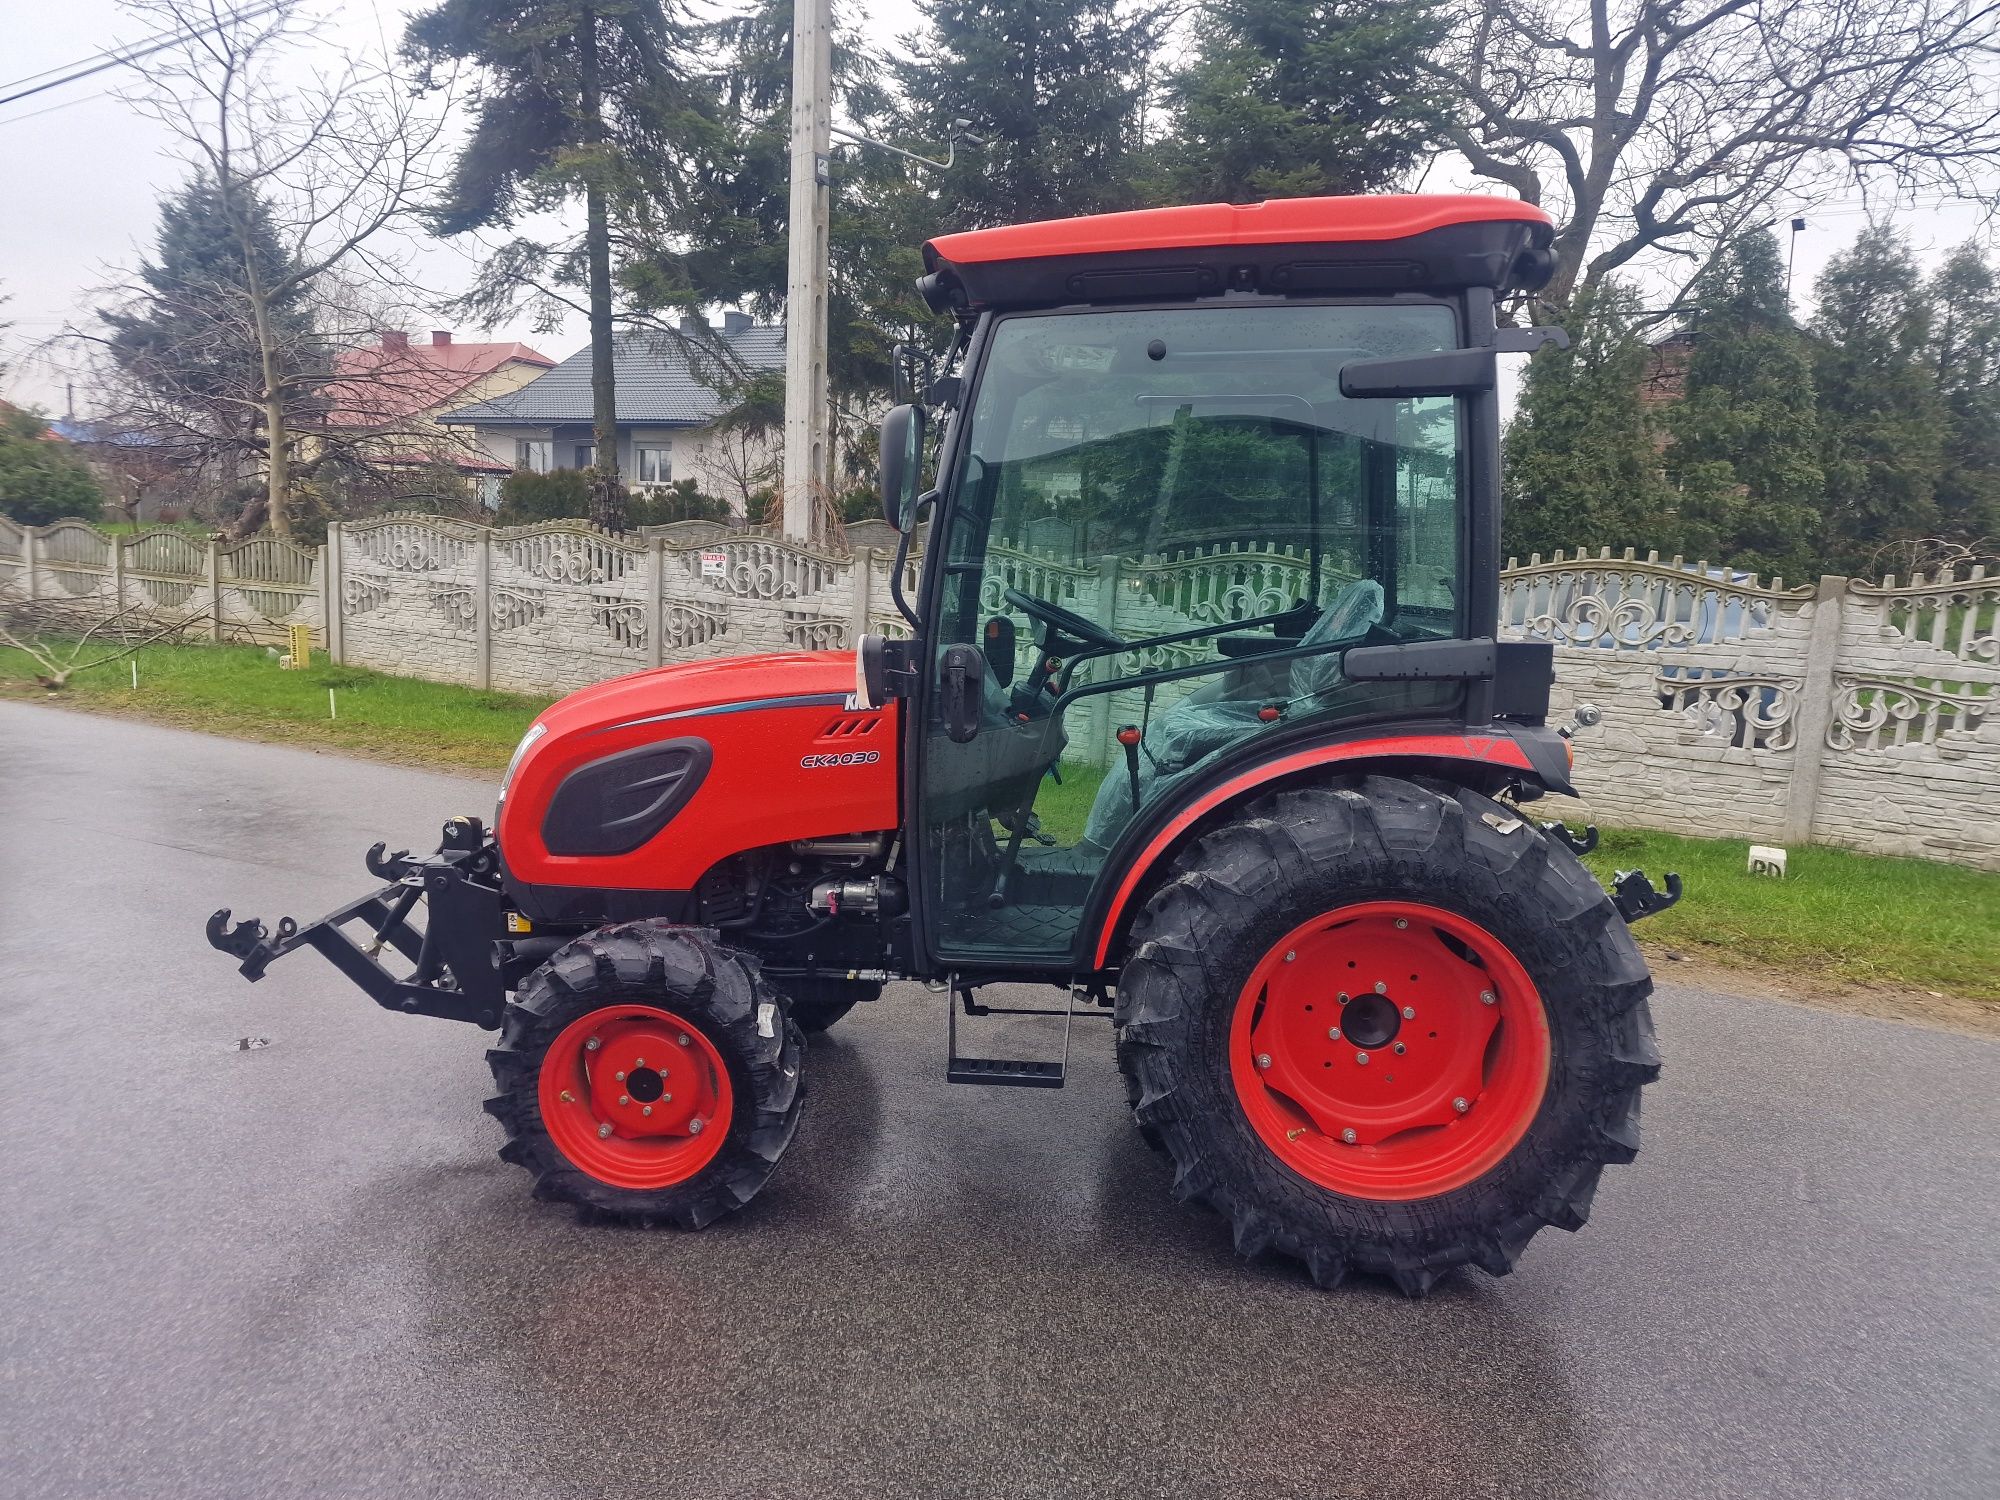 Traktor Kioti CK40 30 fabrycznie nowy